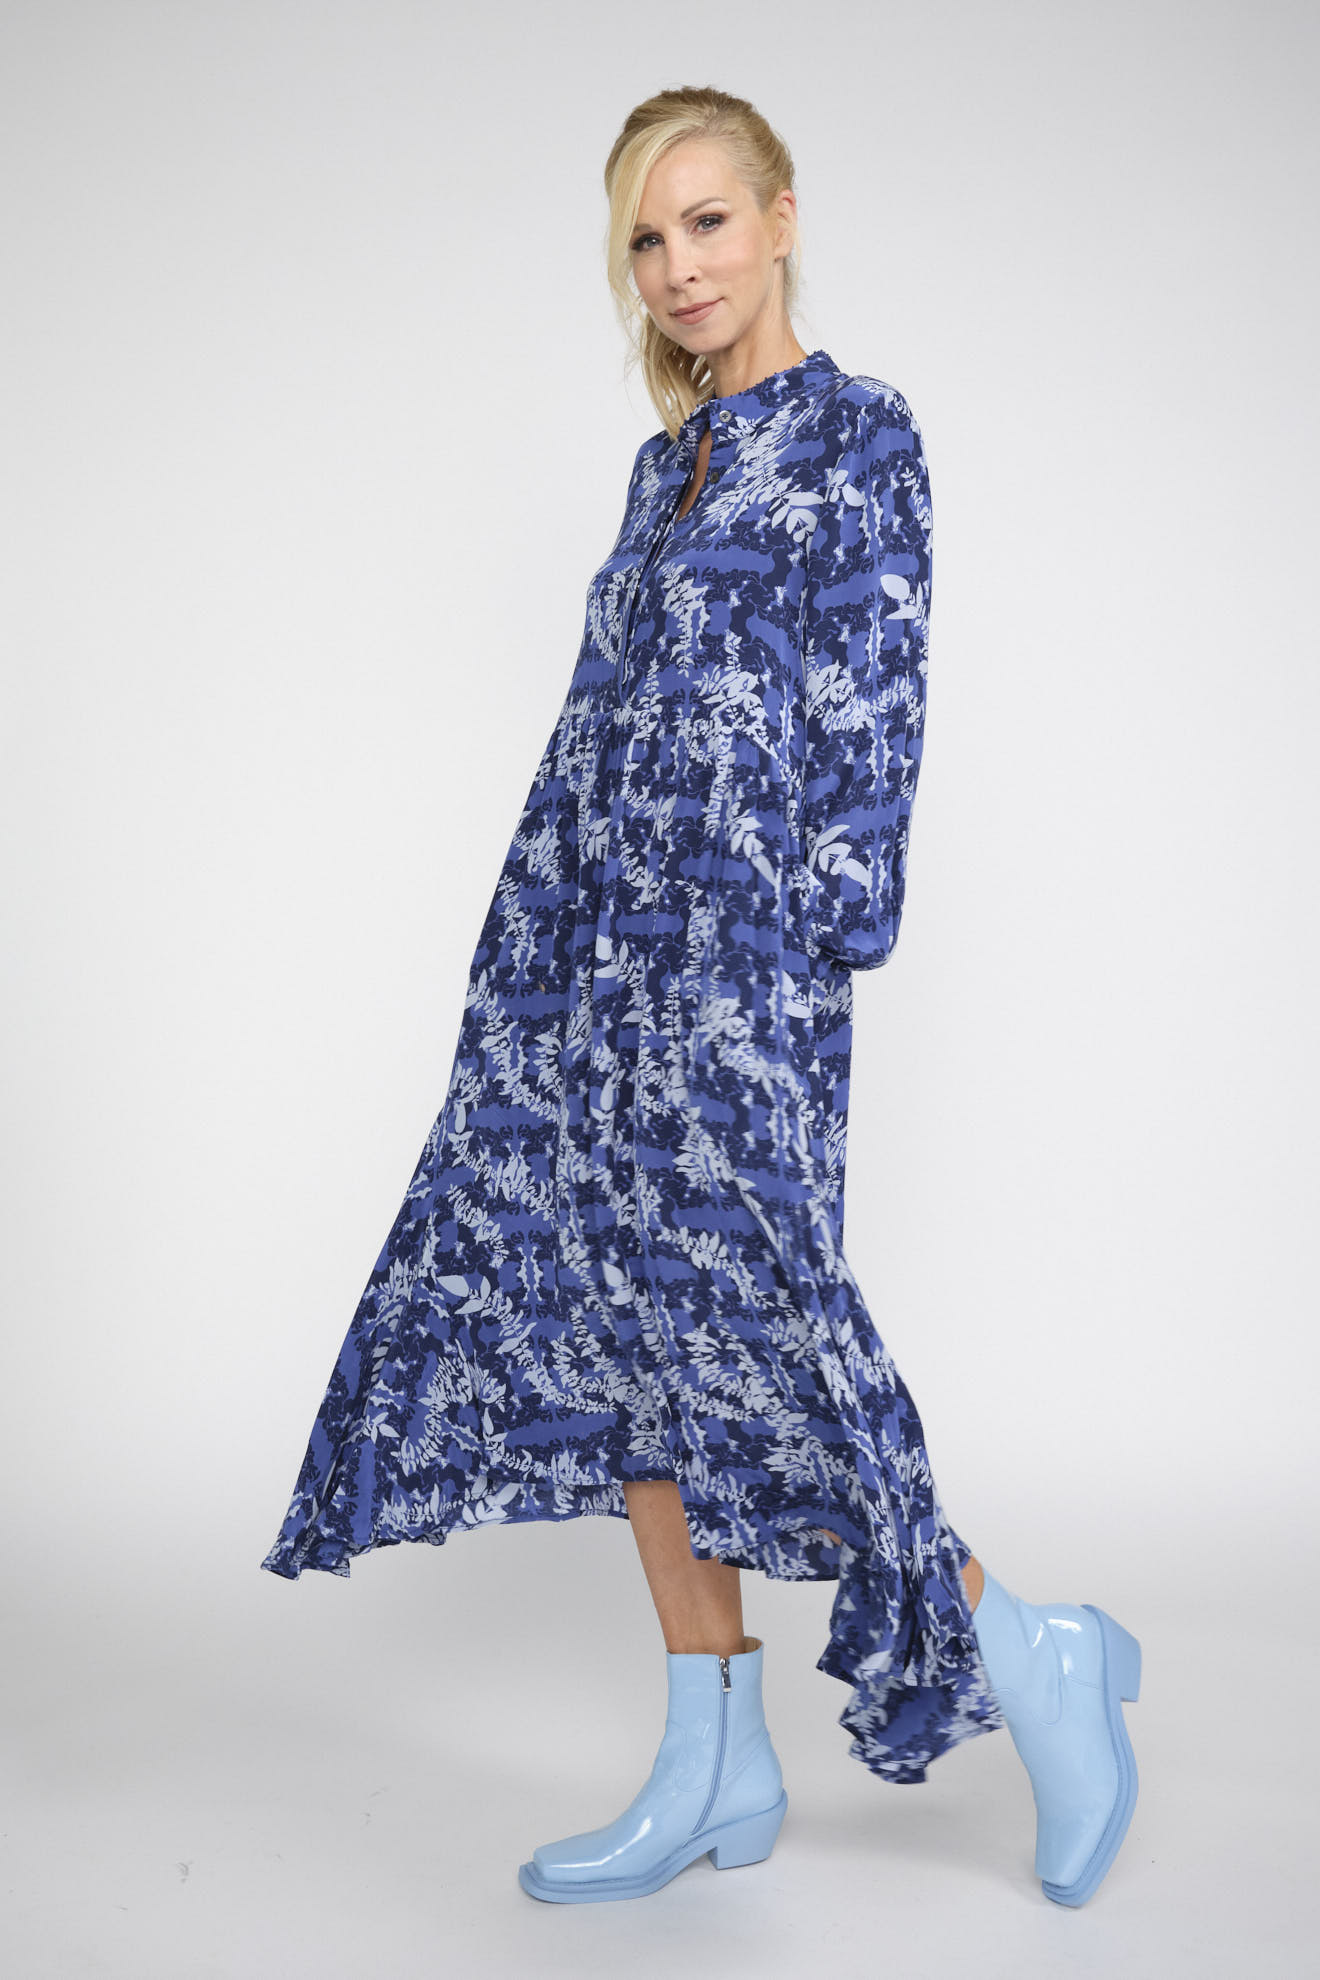 an an londree dress blue white patterns silk